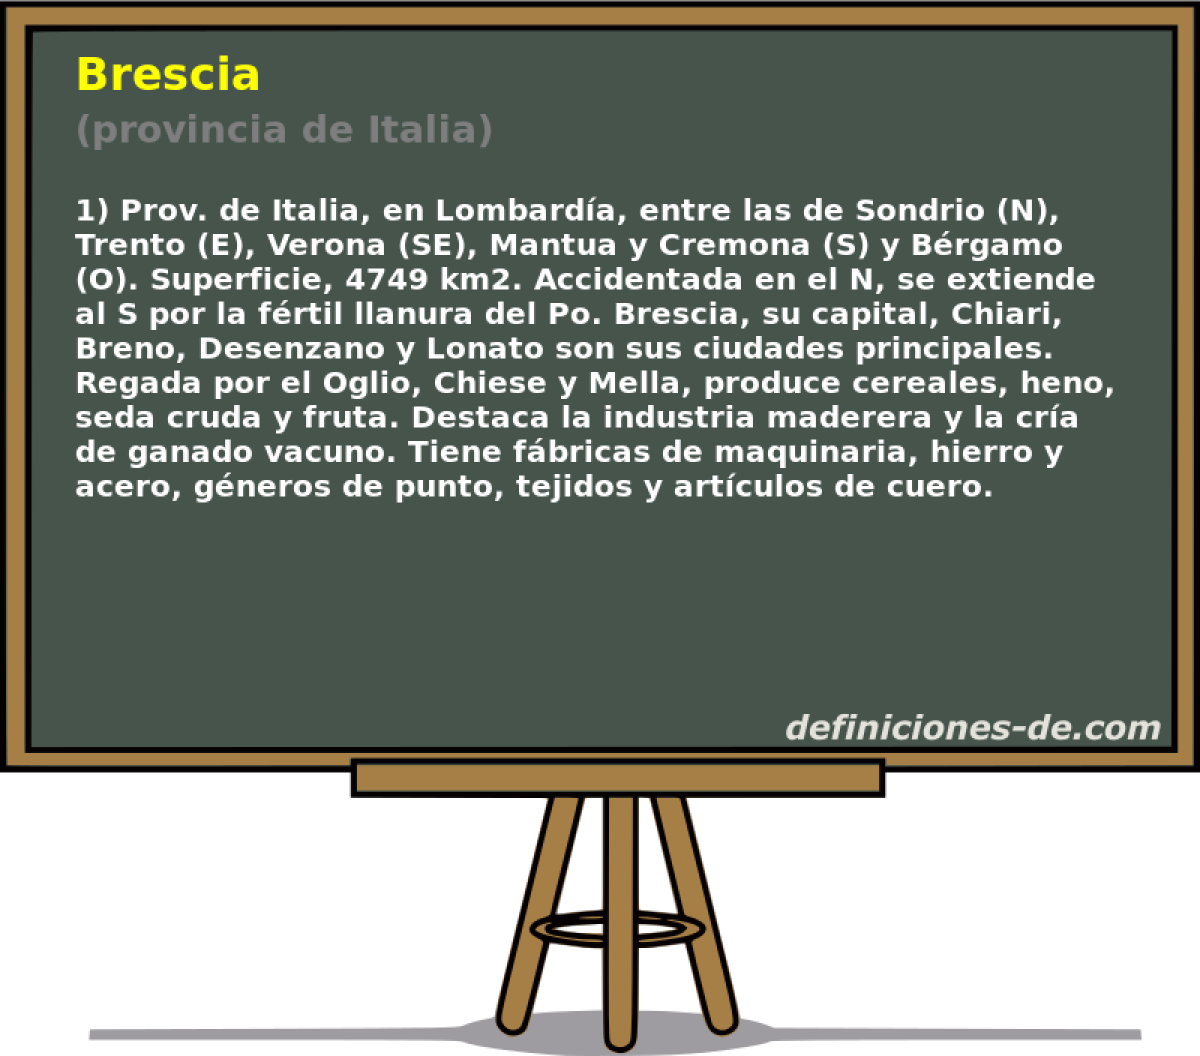 Brescia (provincia de Italia)